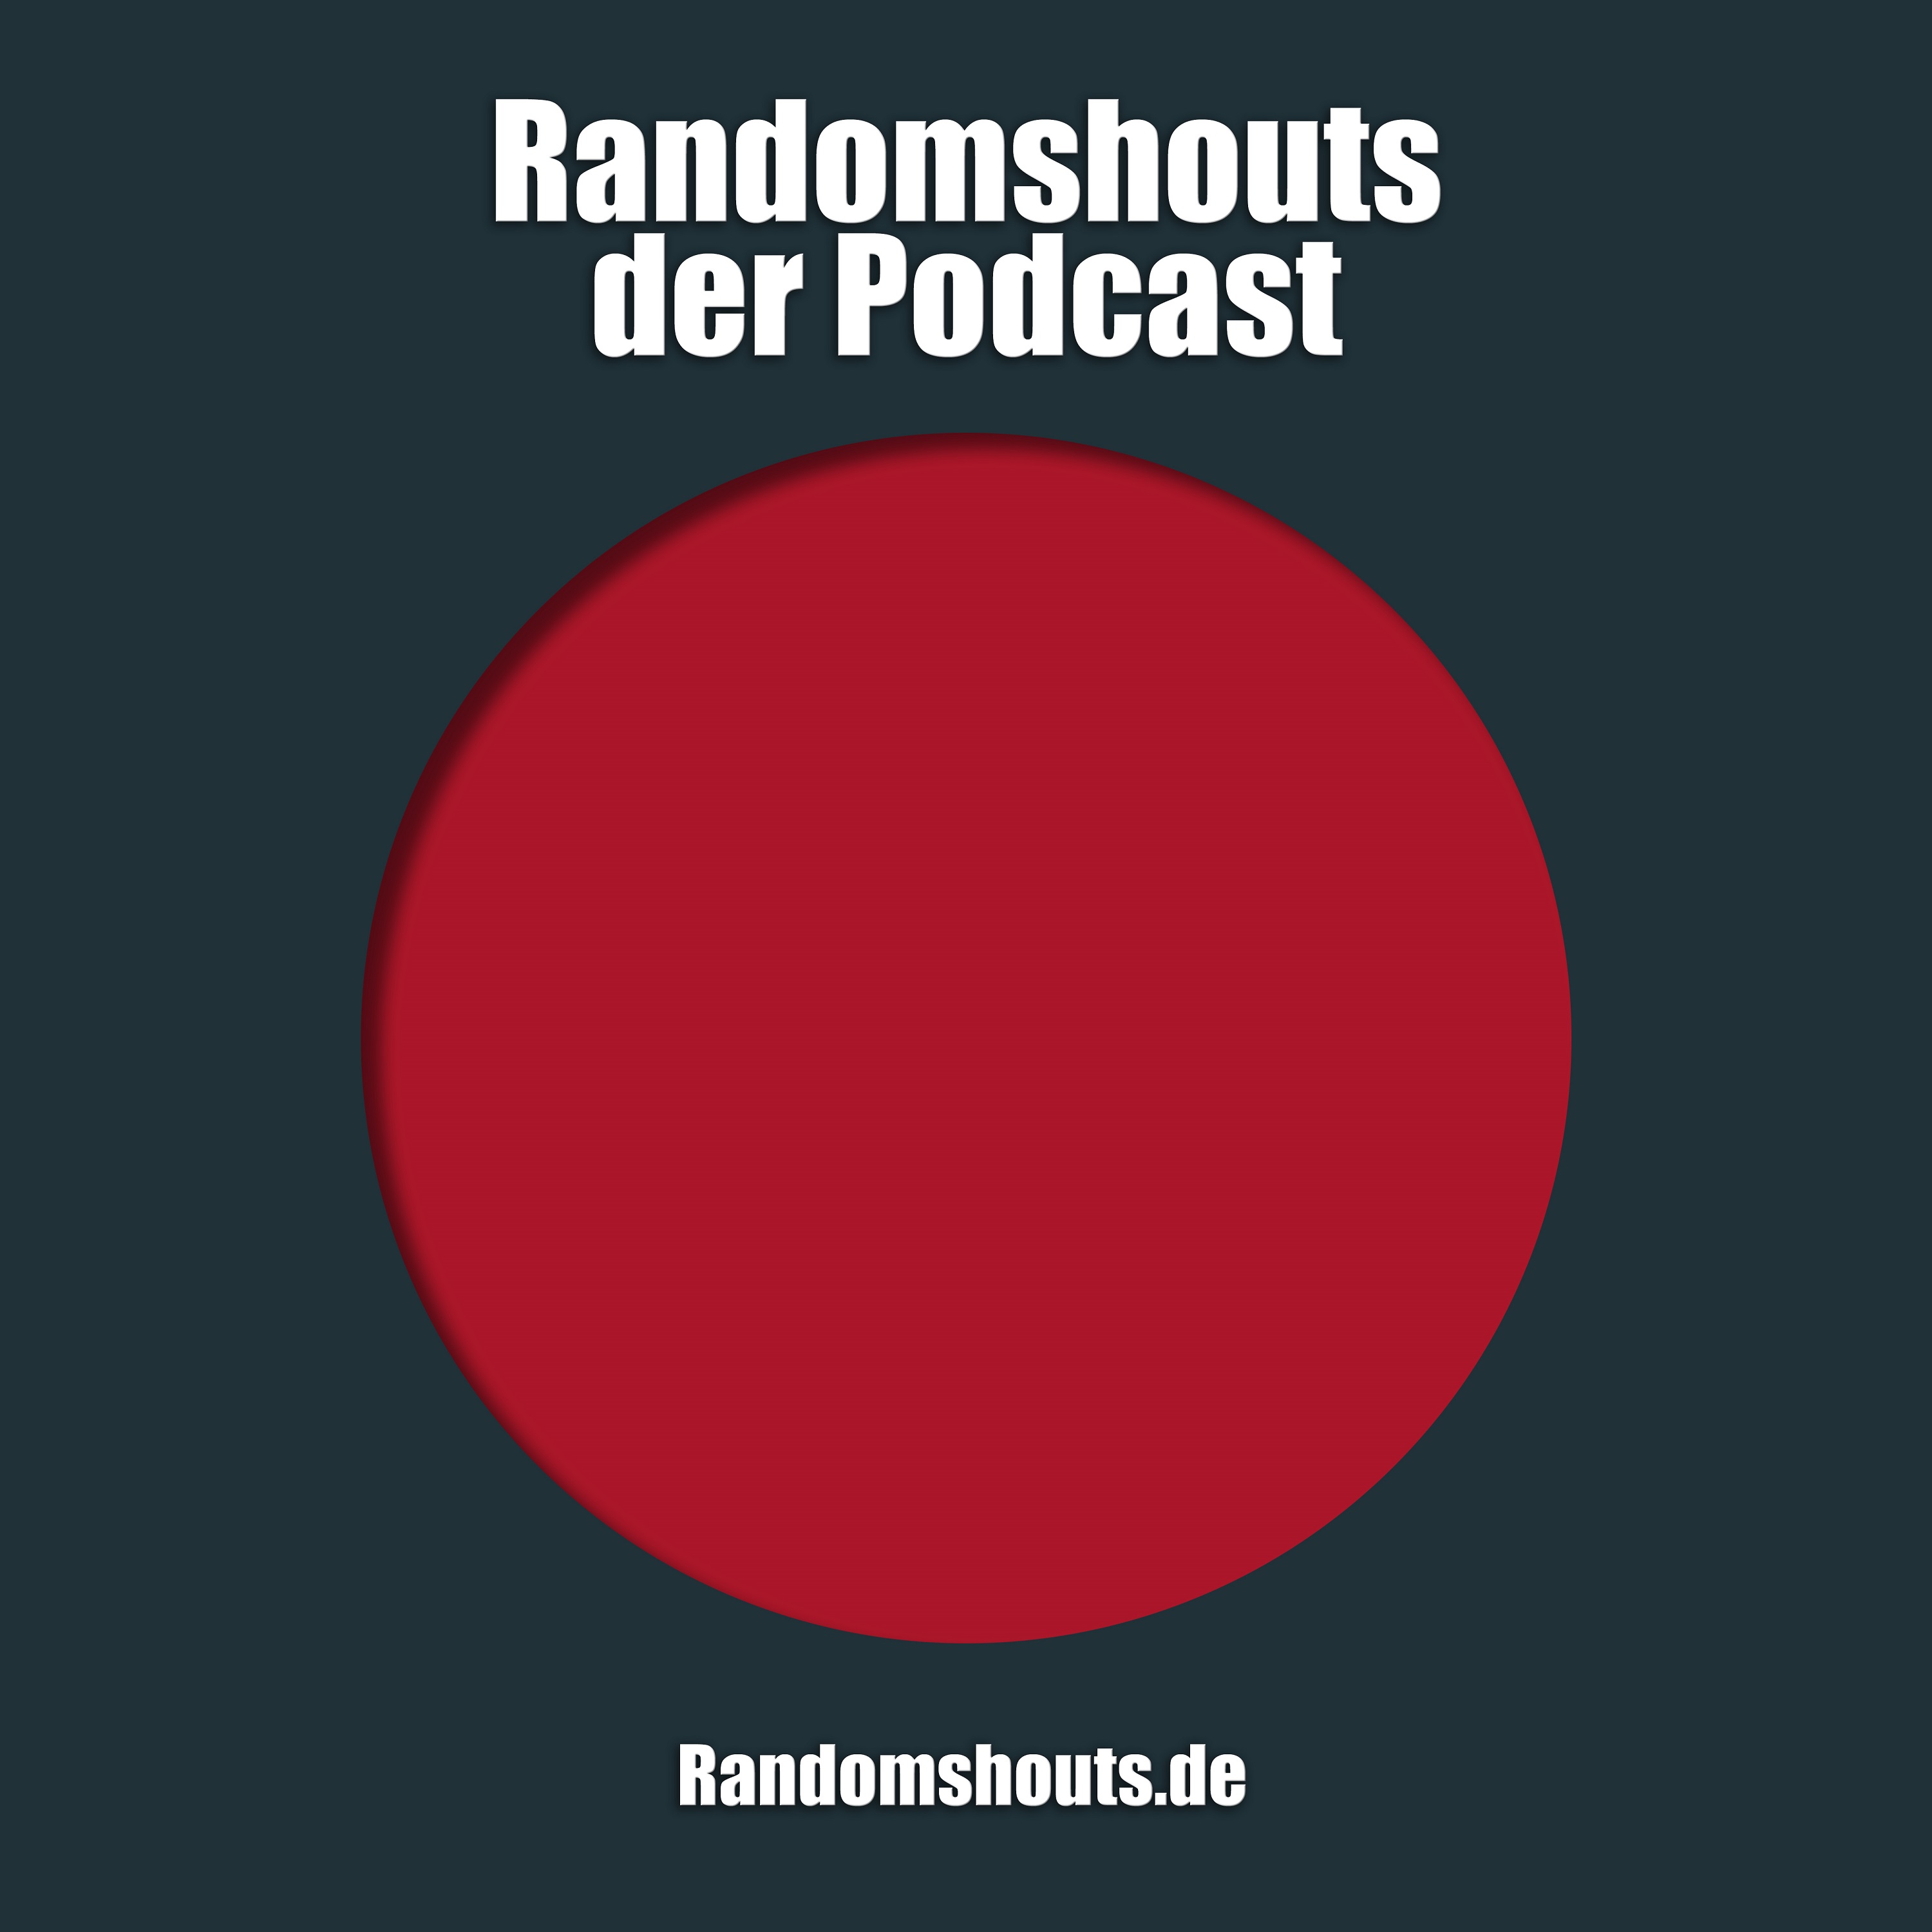 Randomshouts der Podcast - Episode 47: Podcast mit Schuss